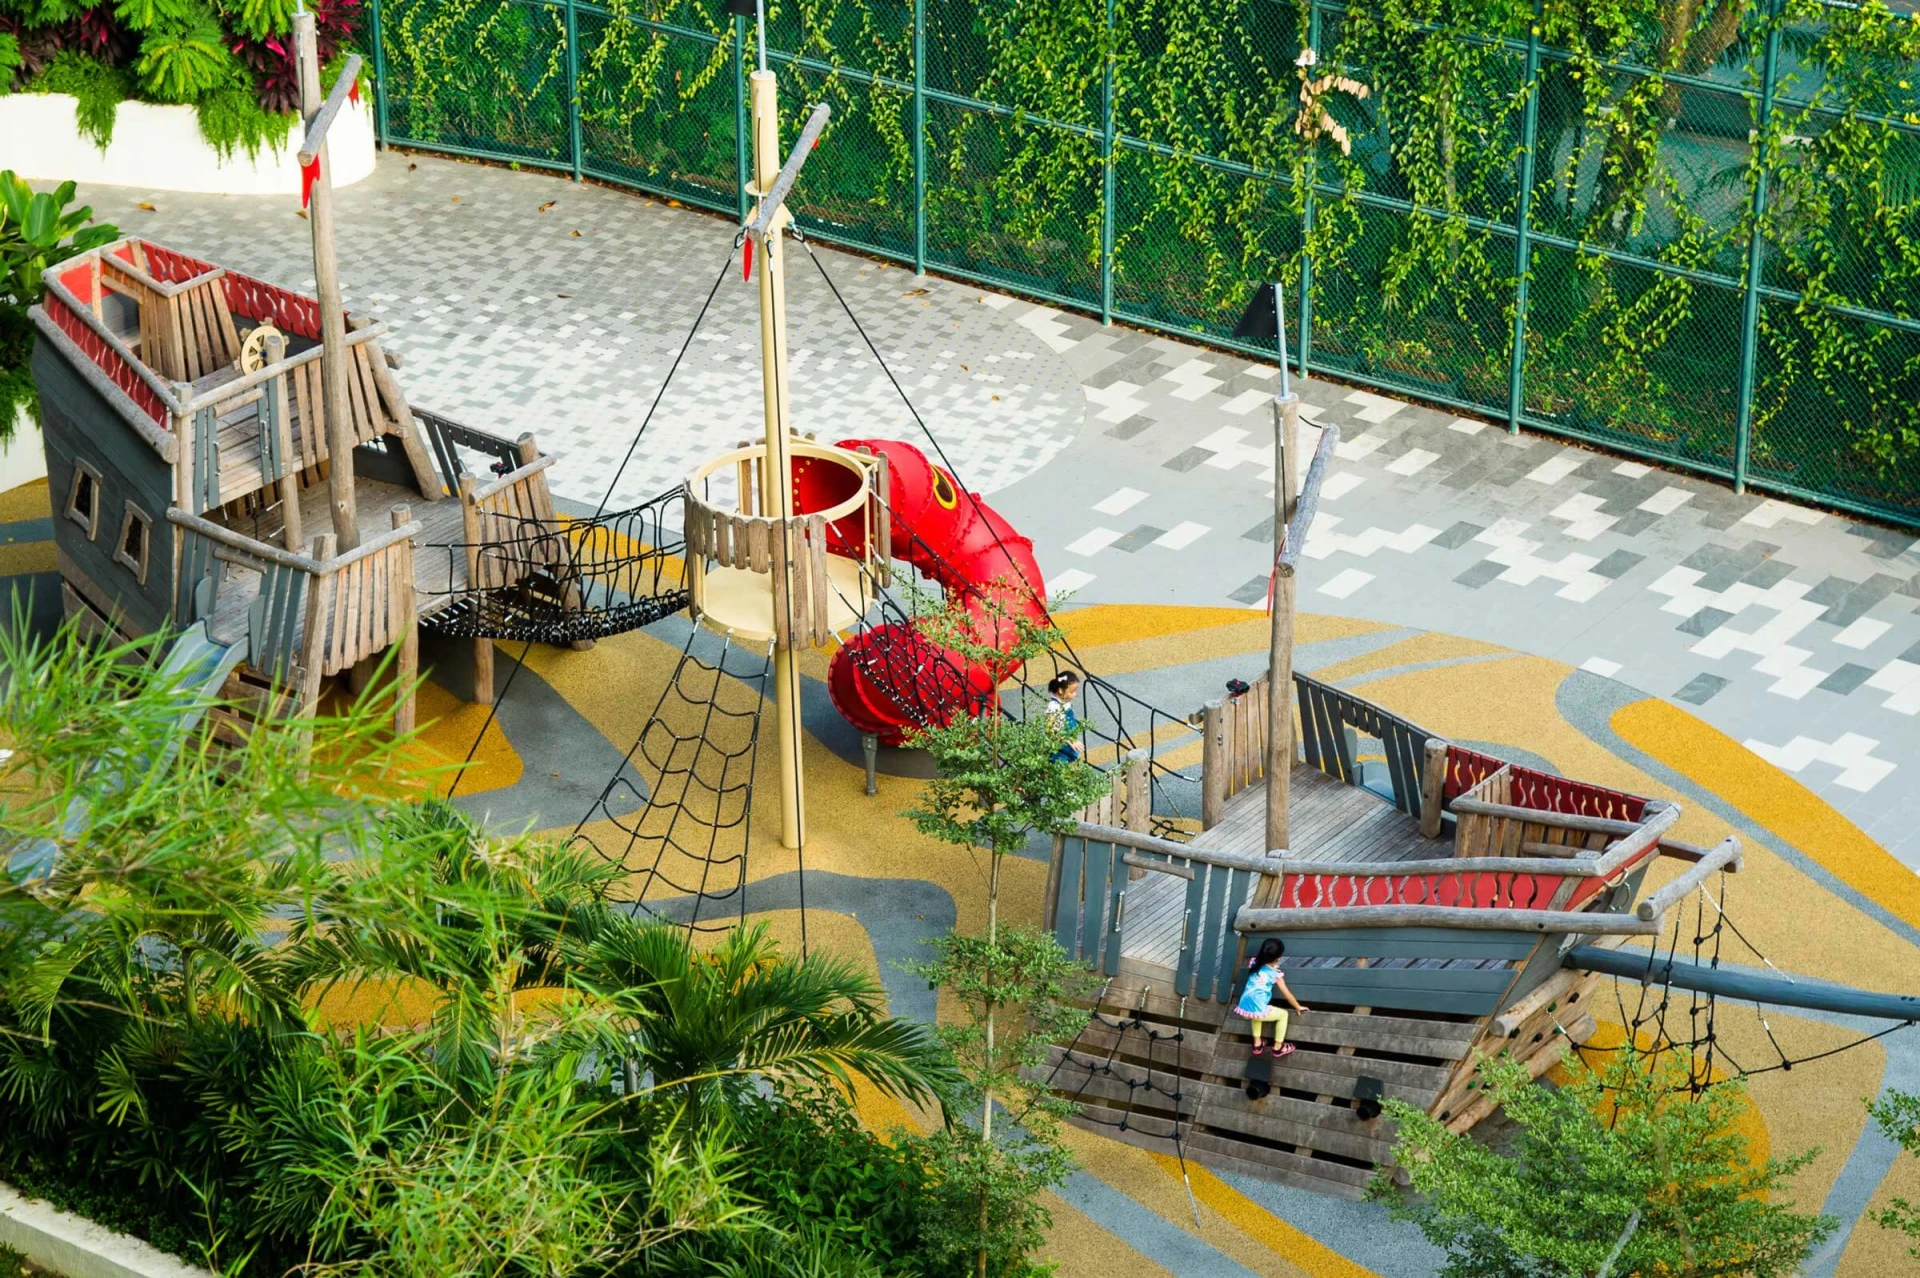 stort legepladsskib i træ med klatrenet og rutsjebane på Shangri-La hotel